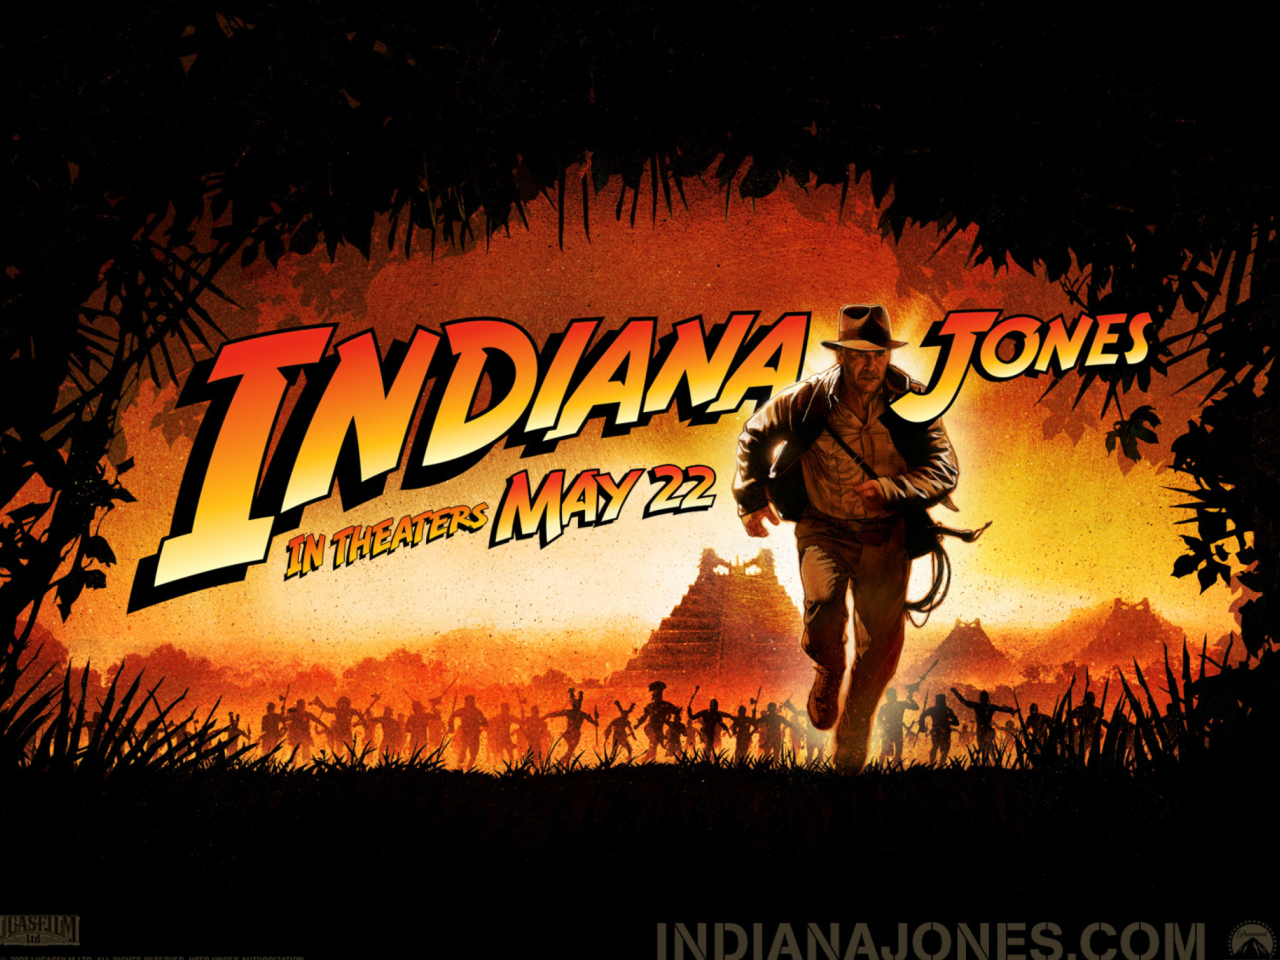 Das Indiana Jones Wallpaper 1280x960